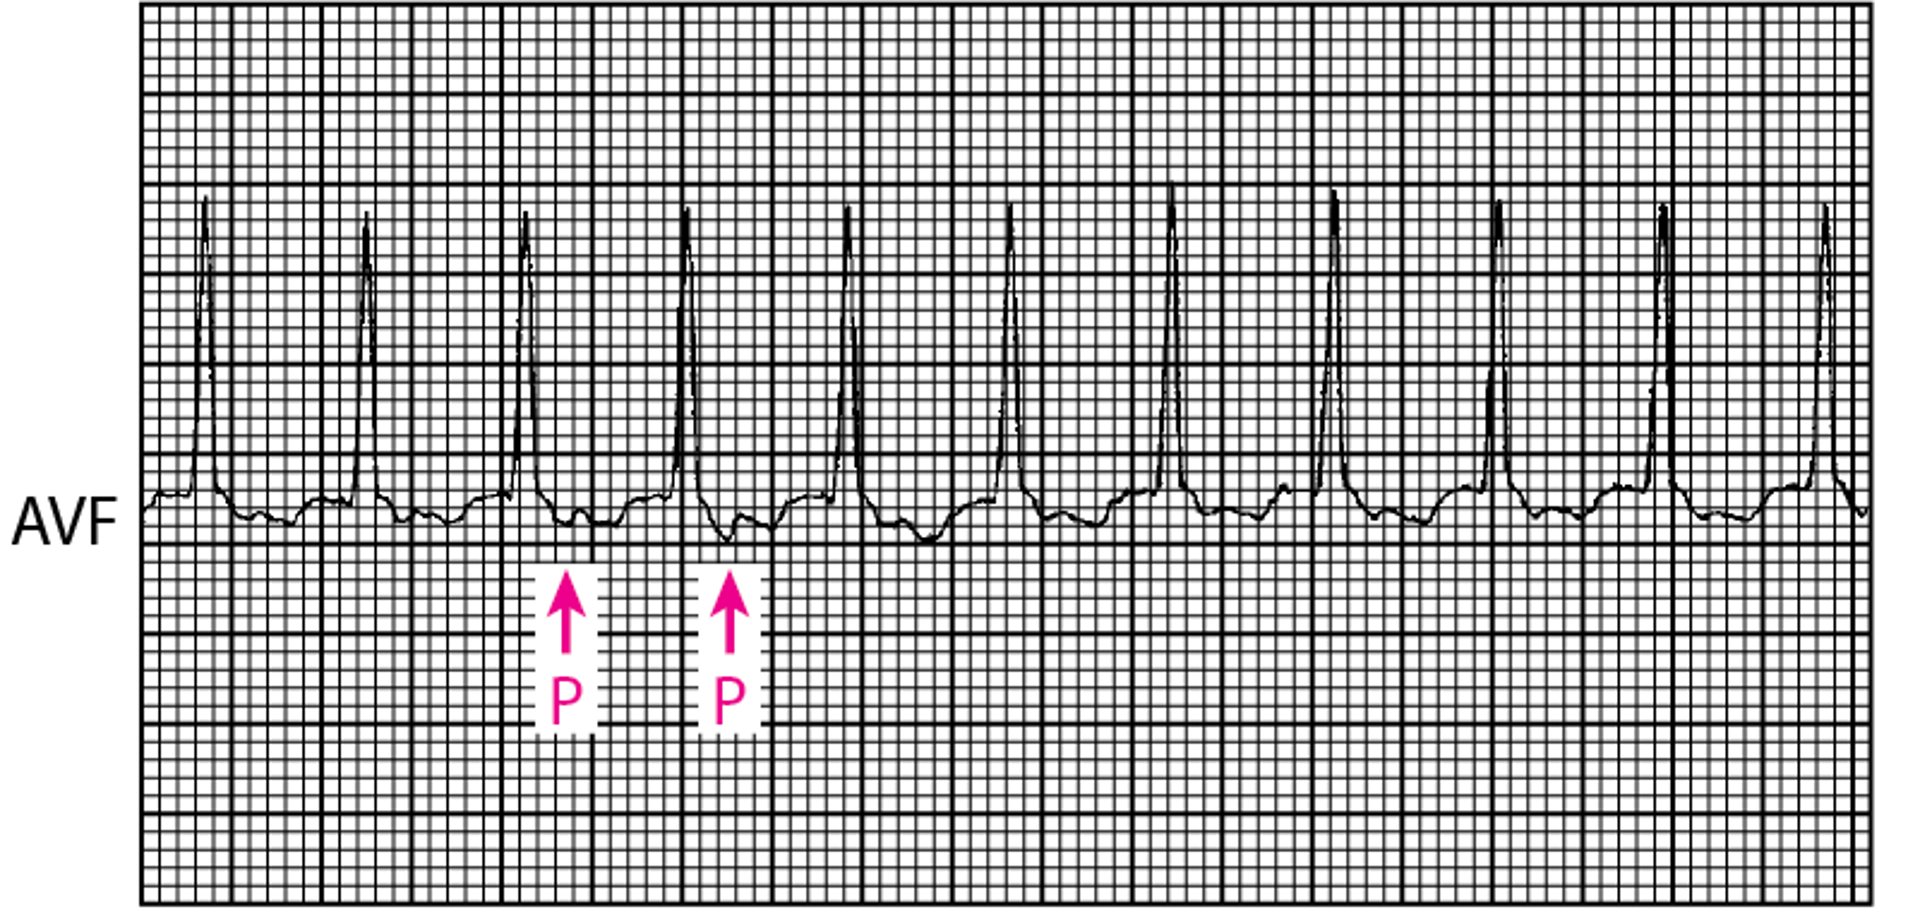 Tachycardie à QRS fins: tachycardie réciproque orthodromique utilisant une voie accessoire dans un syndrome de Wolff-Parkinson-White